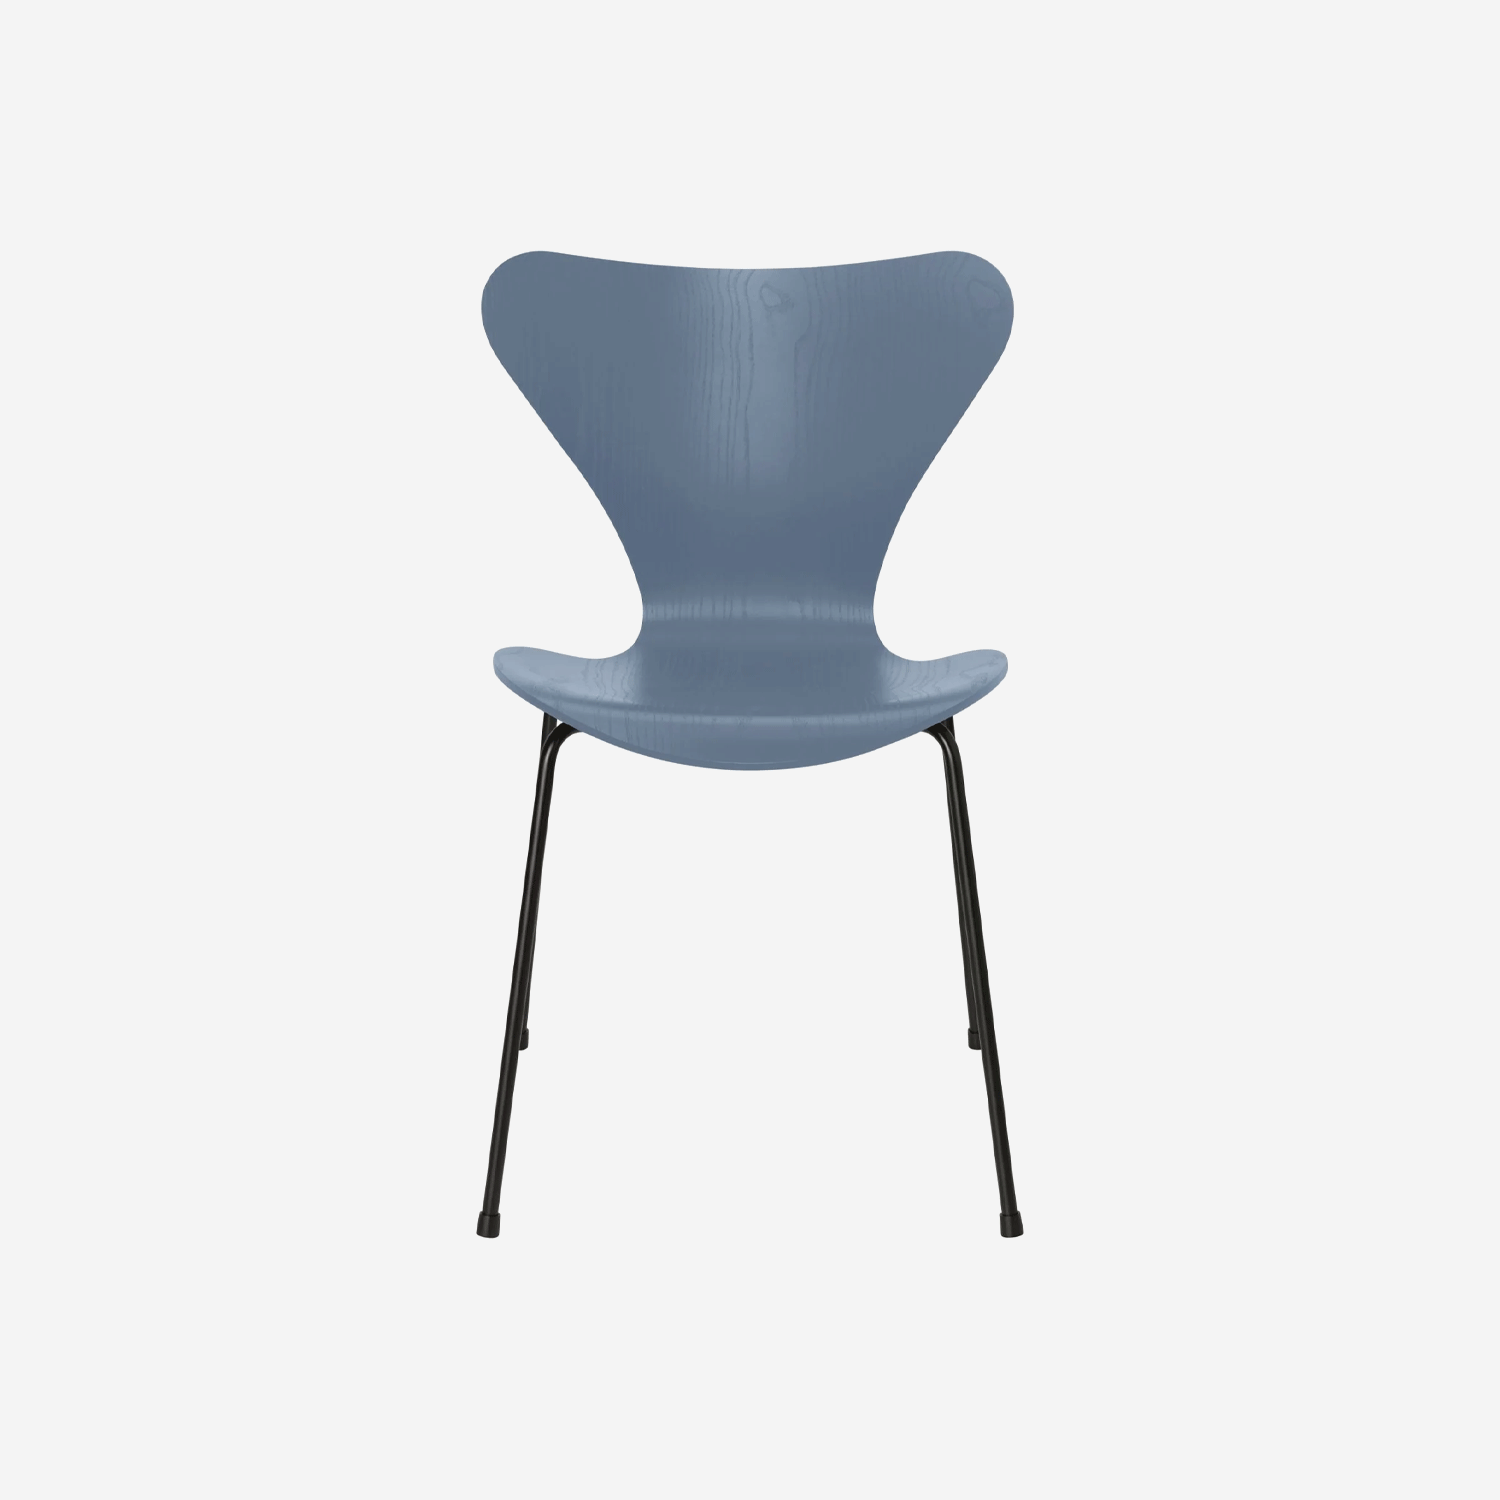 Series 7 chair 3107, coloured ash &amp; black base